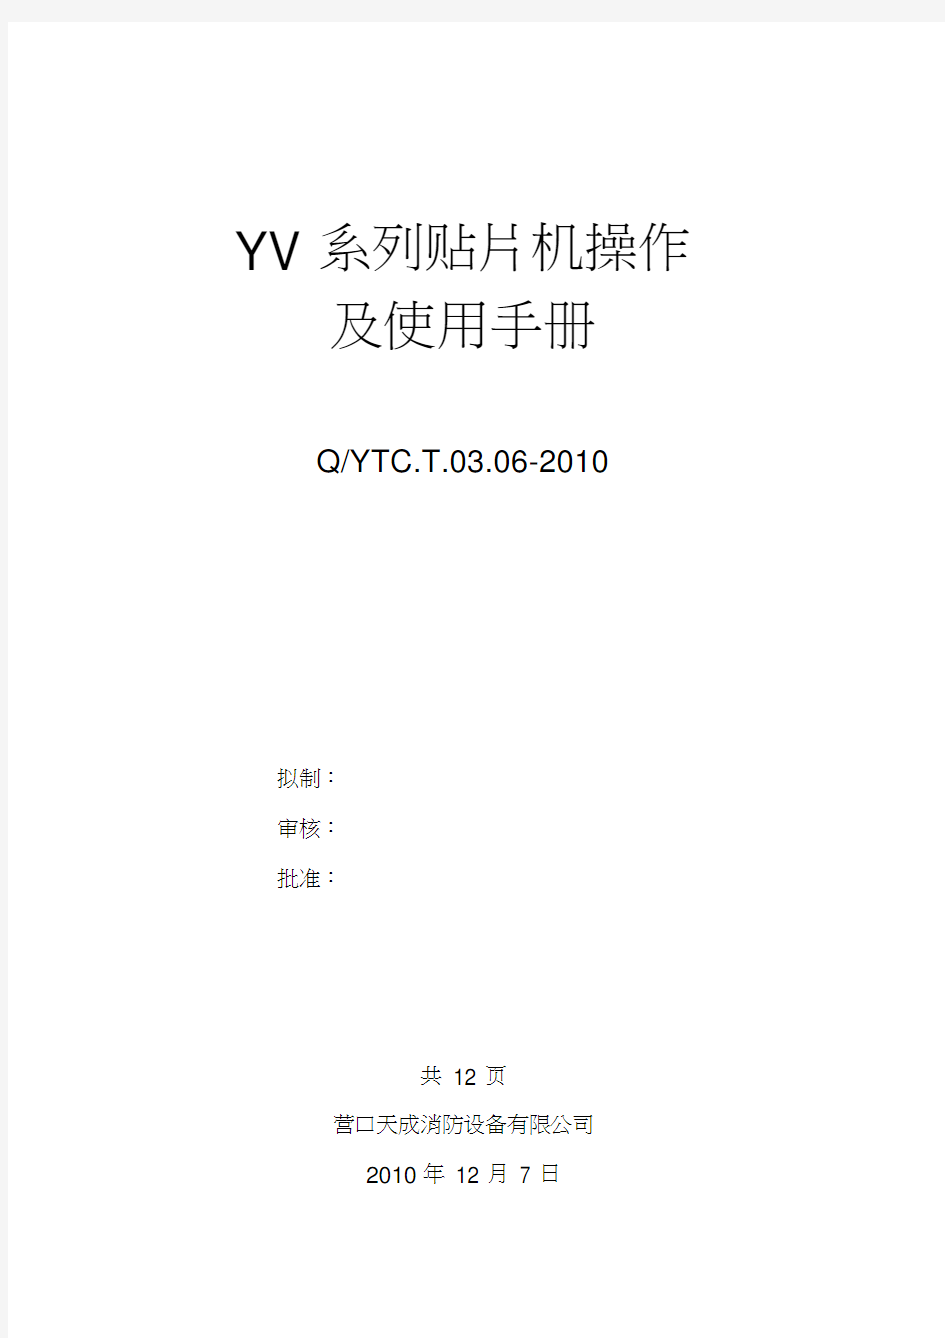 YV系列贴片机操作及使用手册